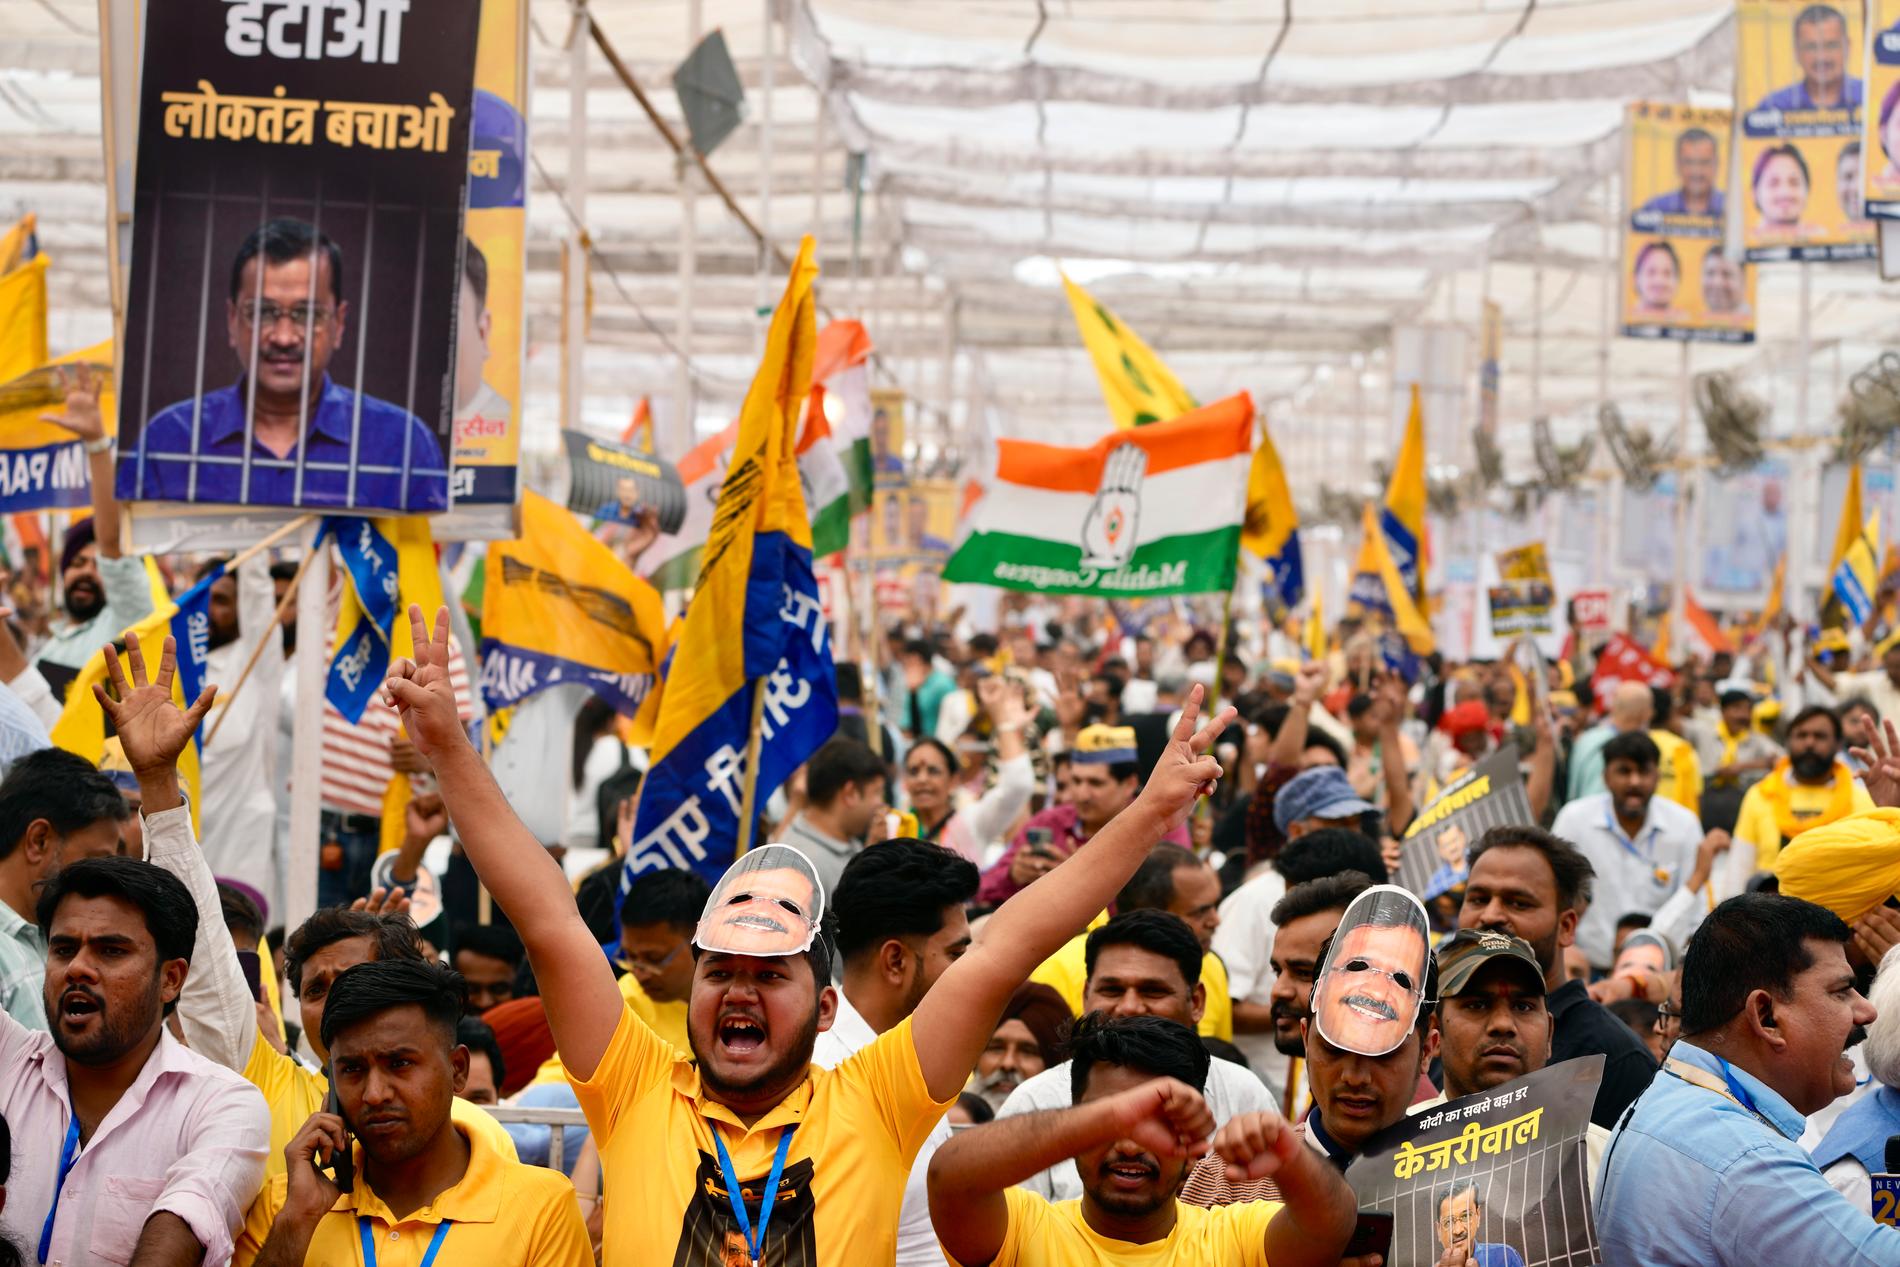 Fallet med den gripne partiledaren Arvind Kejriwal, som även är regional regeringschef i Delhi, har blivit en symbol för Modi-styrets antidemokratiska tendenser. Här protesterar oppositionella i Delhi i slutet av mars mot att Kejriwal hålls fängslad.